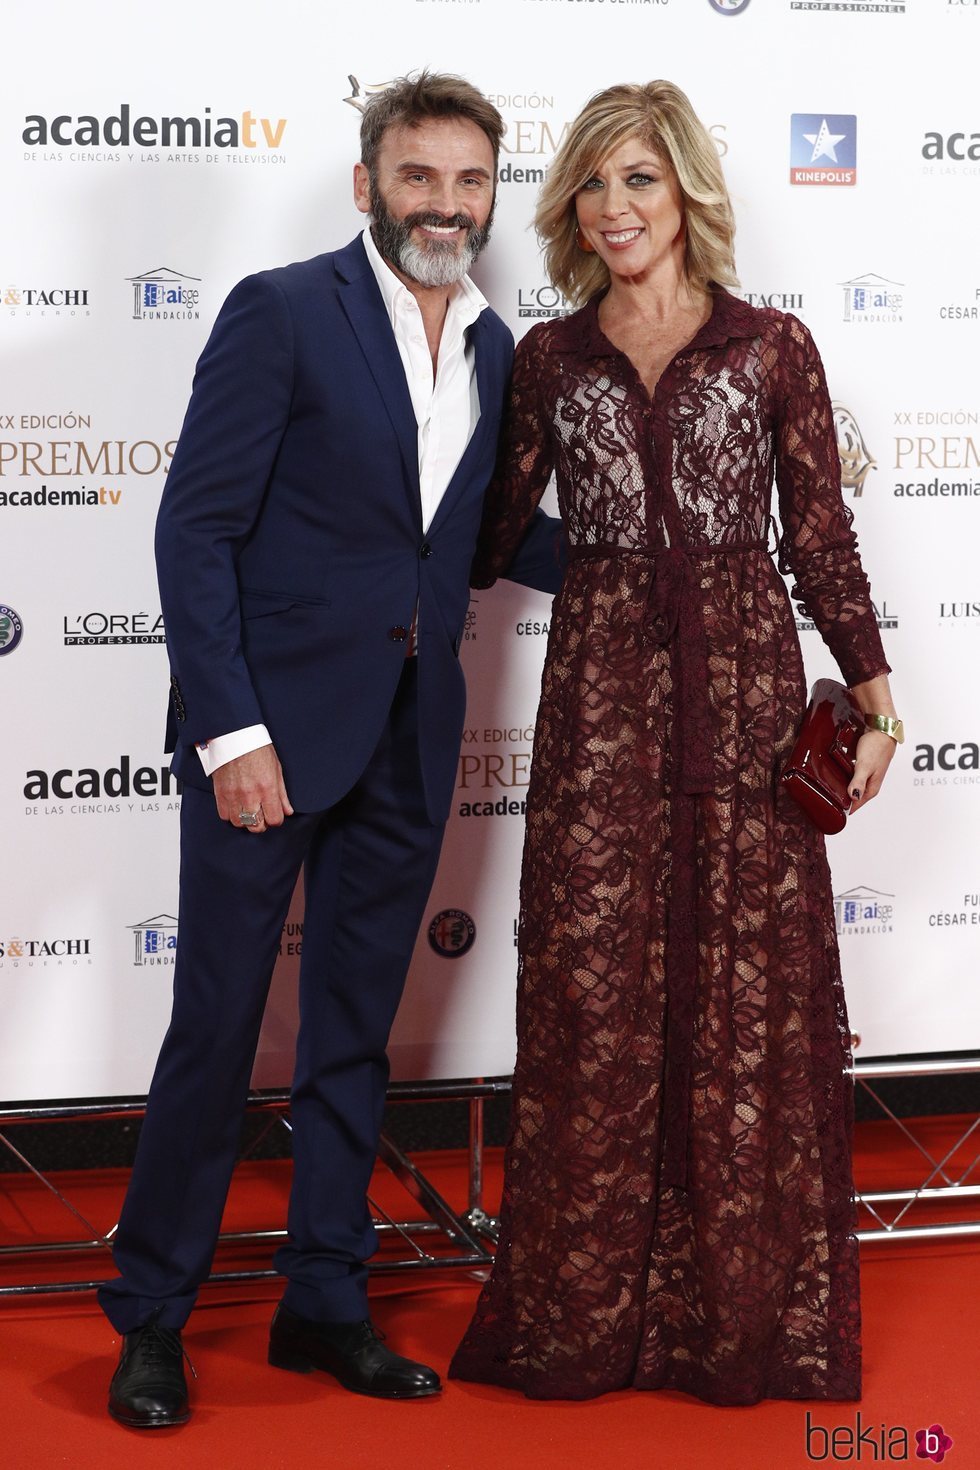 Fernando Tejero y Eva Isanta en los Premios Iris 2018